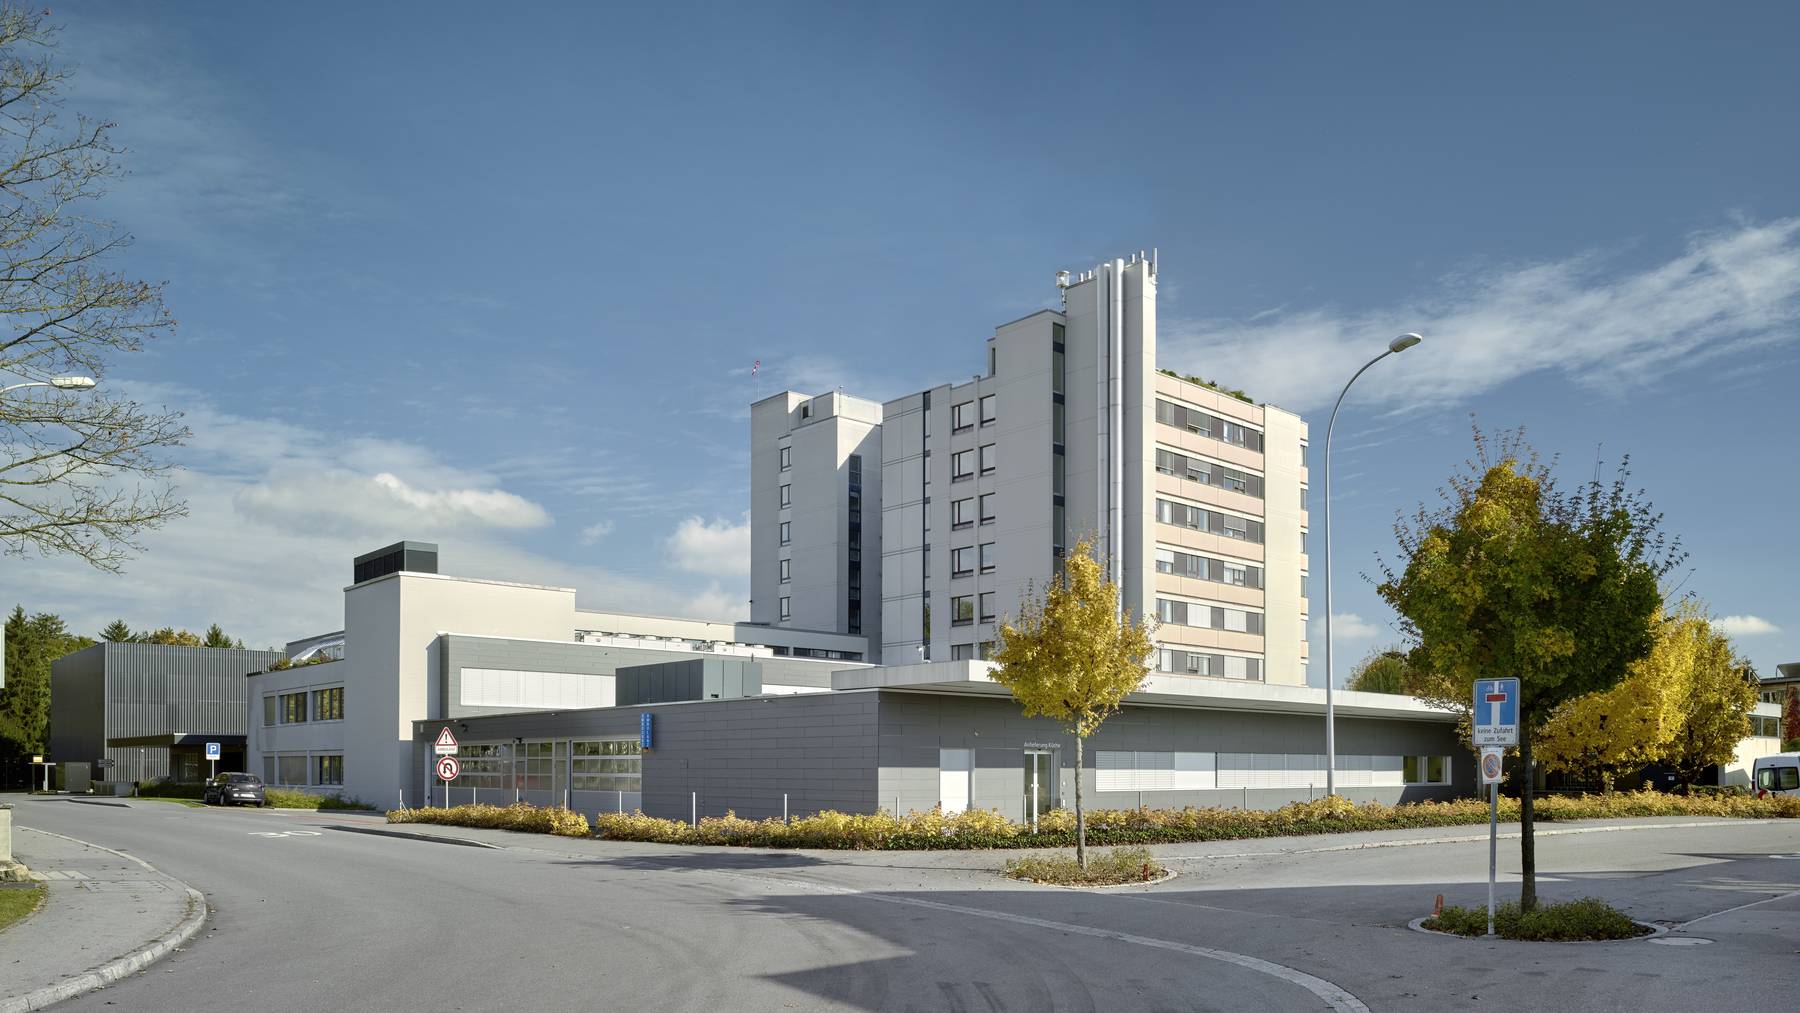 Neubau des Spitals in der Region Sursee verzögert sich weiter